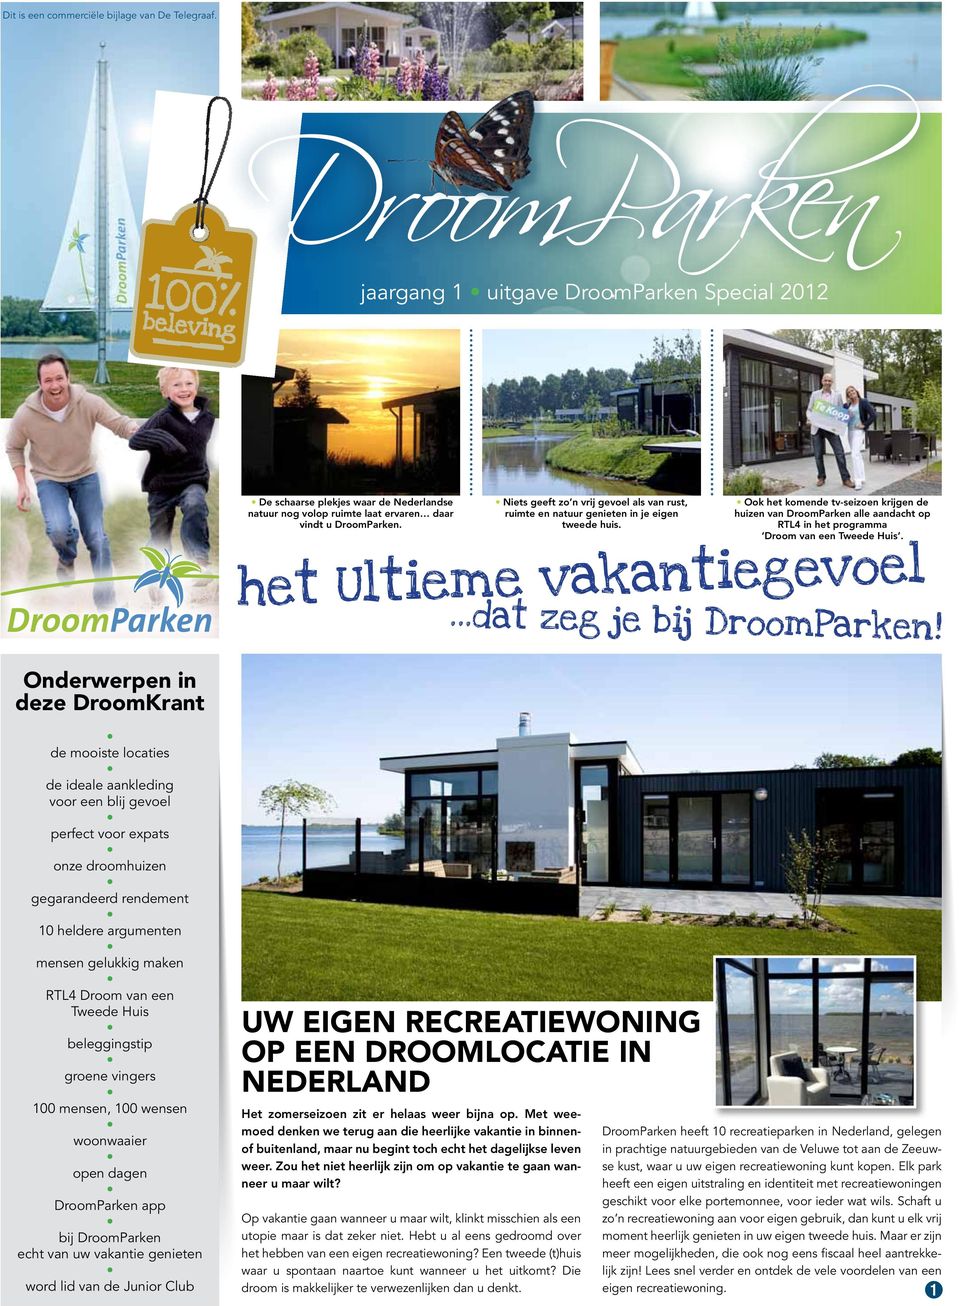 Ook het komende tv-seizoen krijgen de huizen van DroomParken alle aandacht op RTL4 in het programma Droom van een Tweede Huis. het Ultieme vakantiegevoel...dat zeg je bij DroomParken!